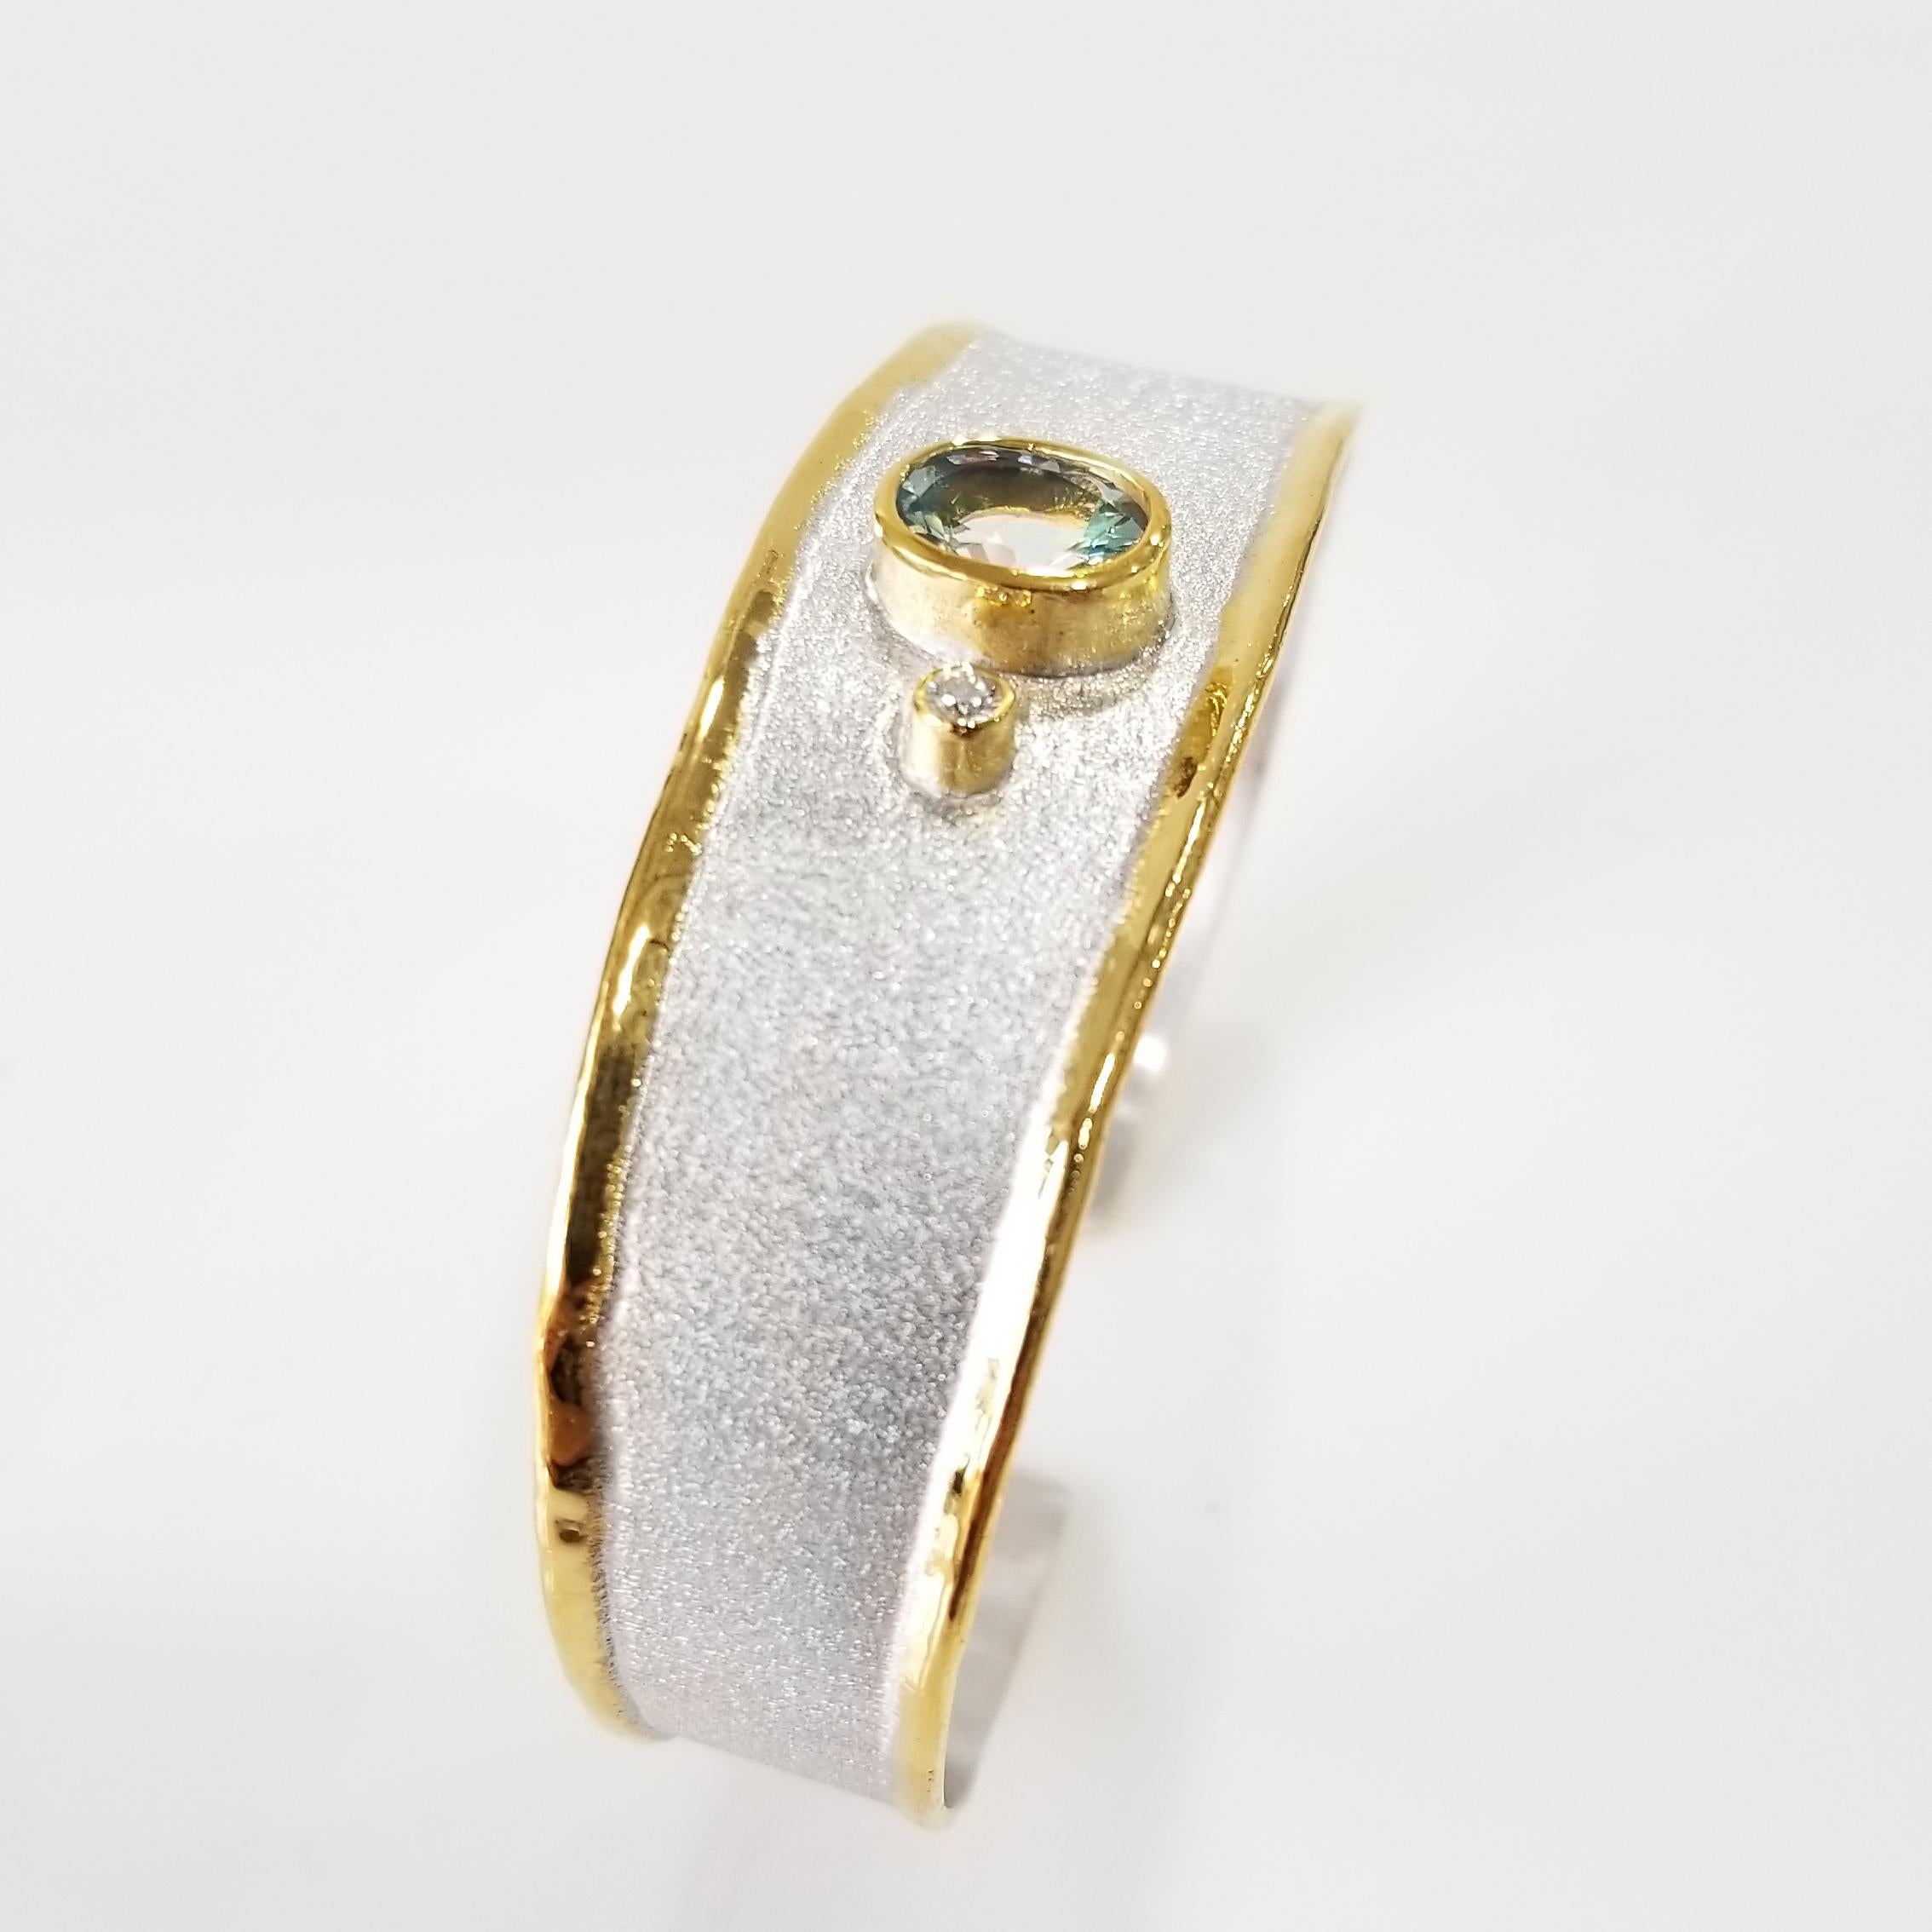 Yianni Creations Manschettenarmband von Midas Collection, handgefertigt aus reinem 950er Silber und mit Palladium beschichtet, um den Elementen zu widerstehen. Dieses wunderschöne, handgefertigte Armband besteht aus einem ovalen, natürlichen